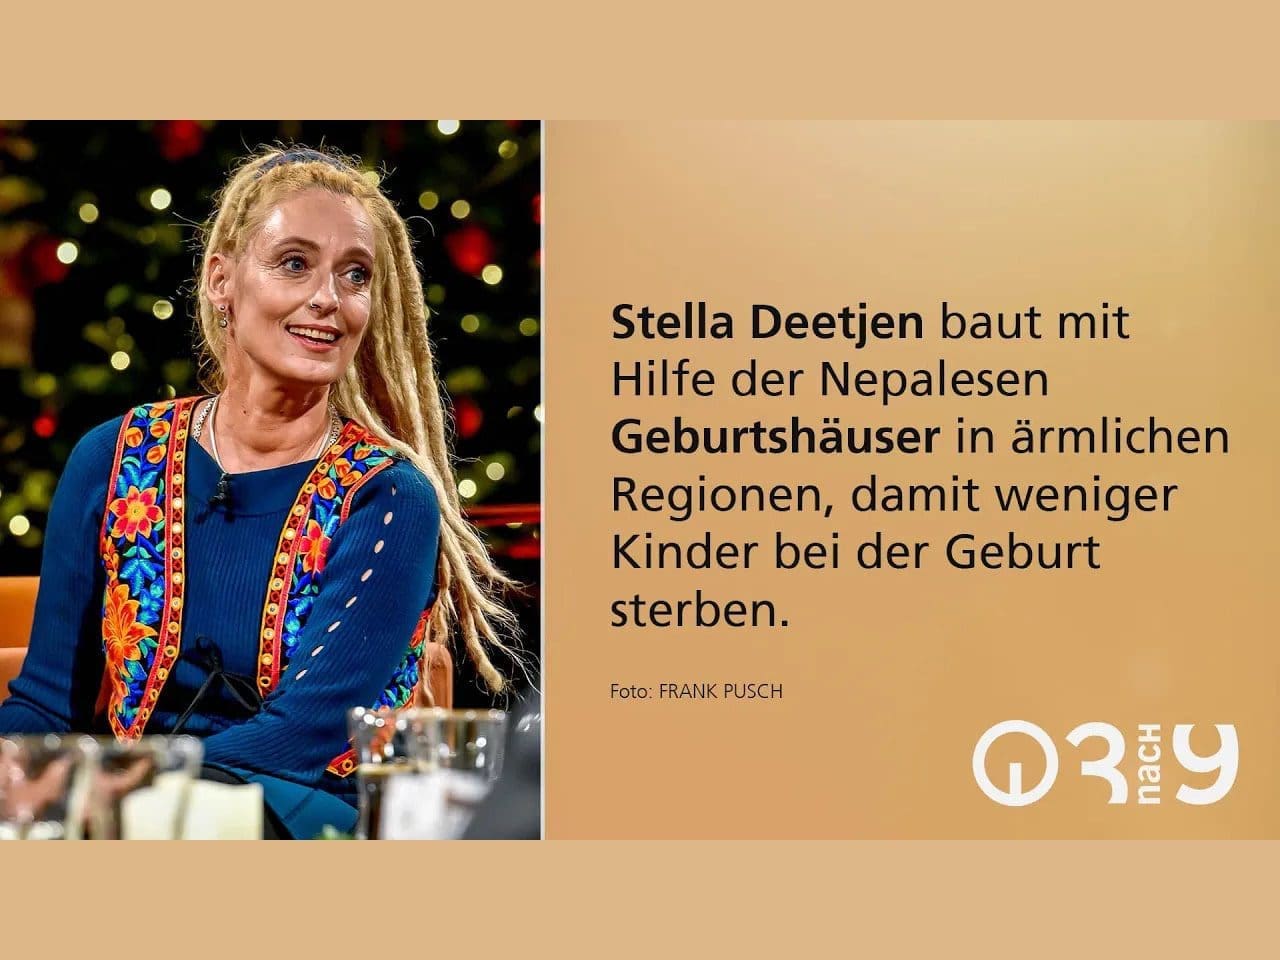 Stella Deetjen über ein Leben für die „Unberührbaren"